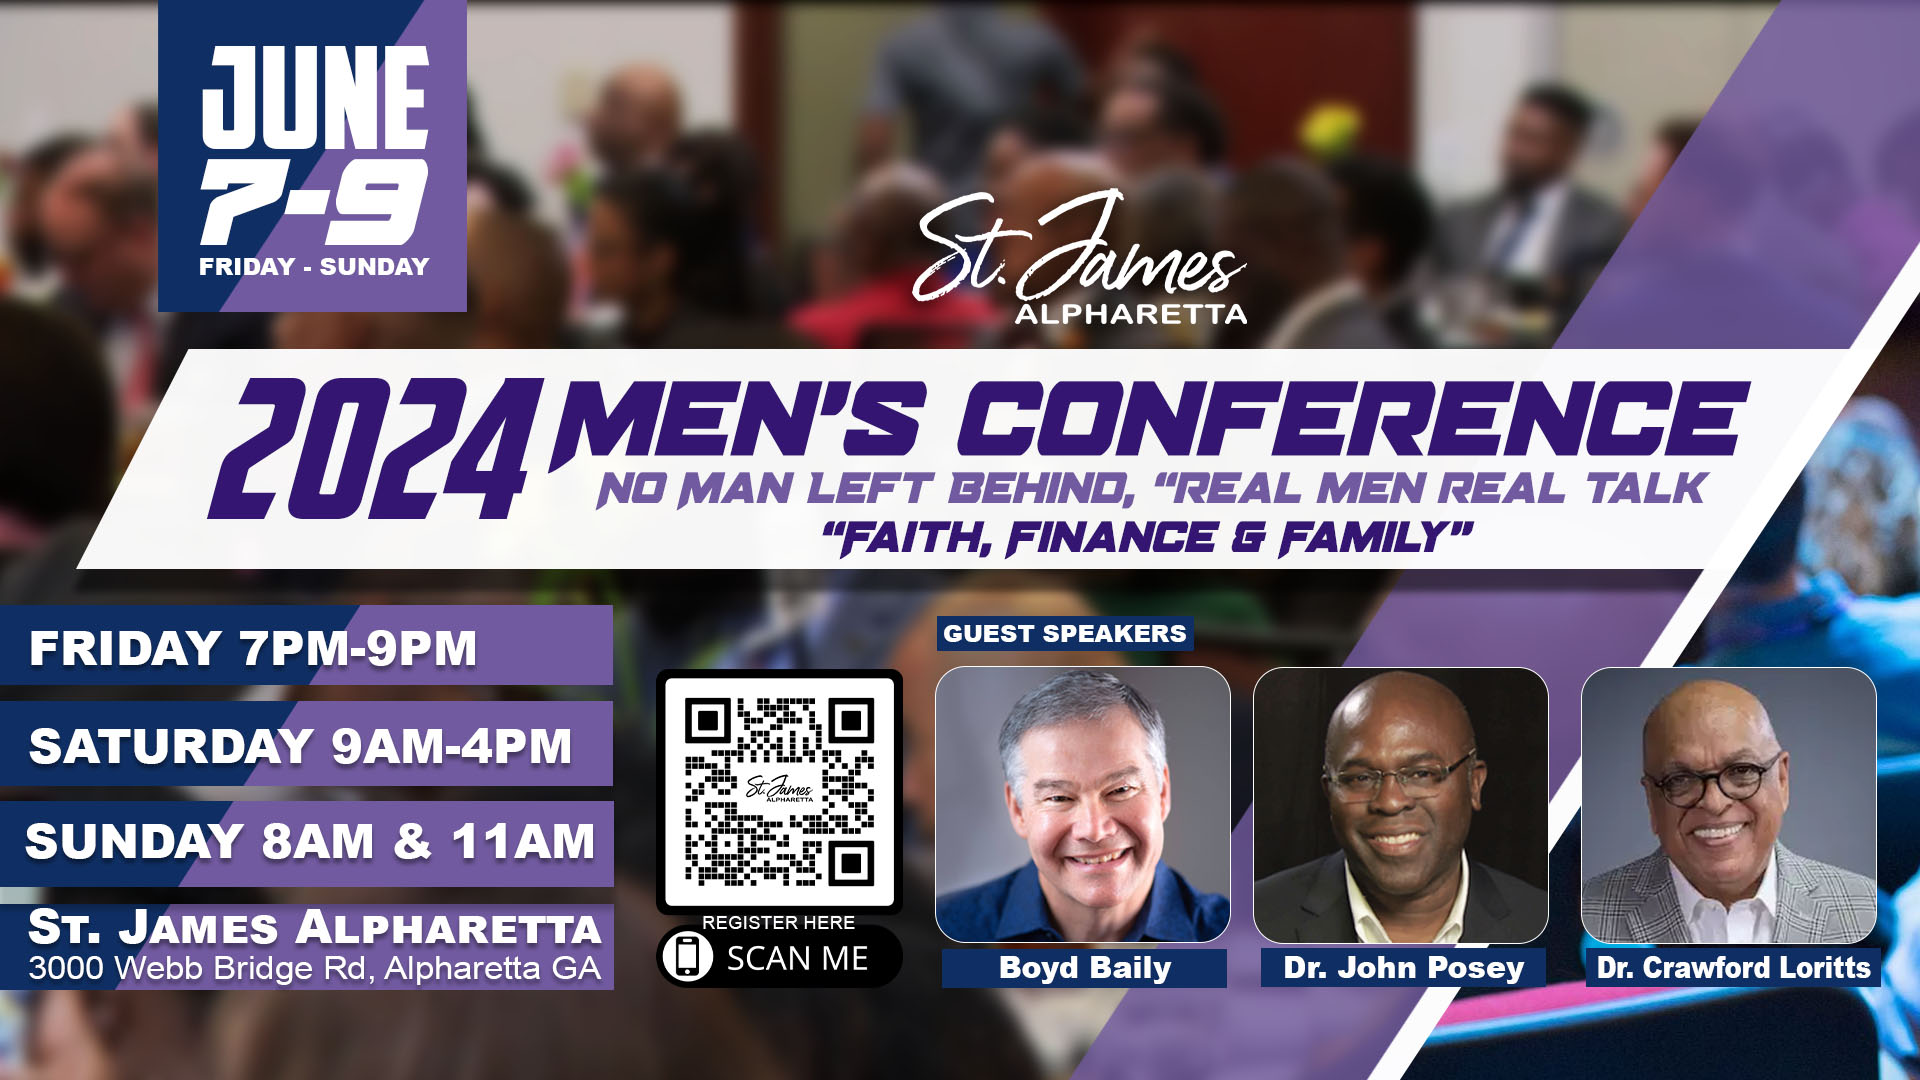 2024 St. James Alpharetta - Men's Conference